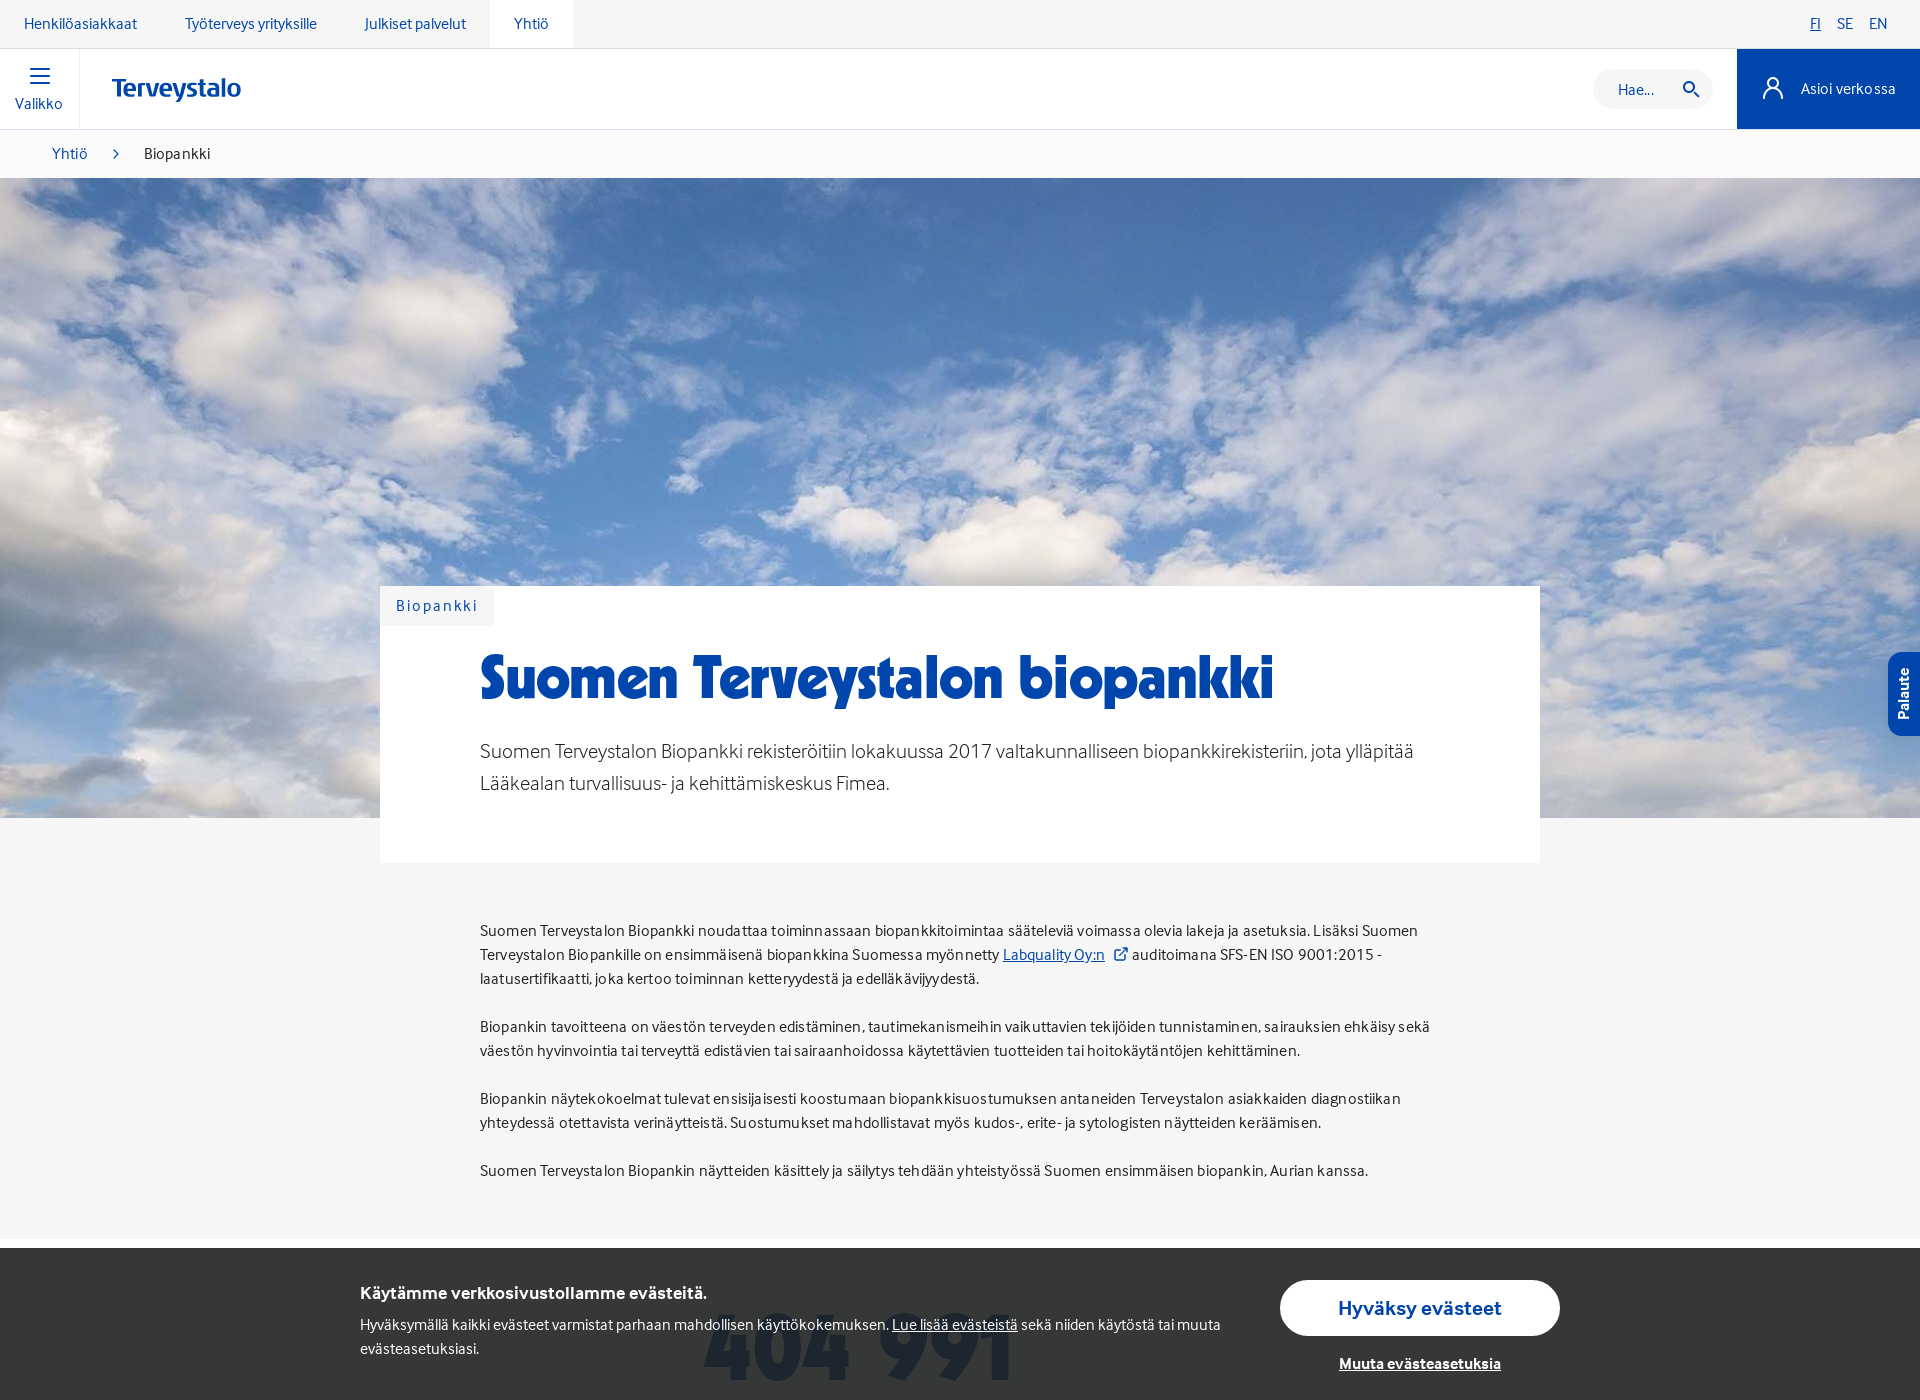 Screenshot for suomenterveystalonbiopankki.fi